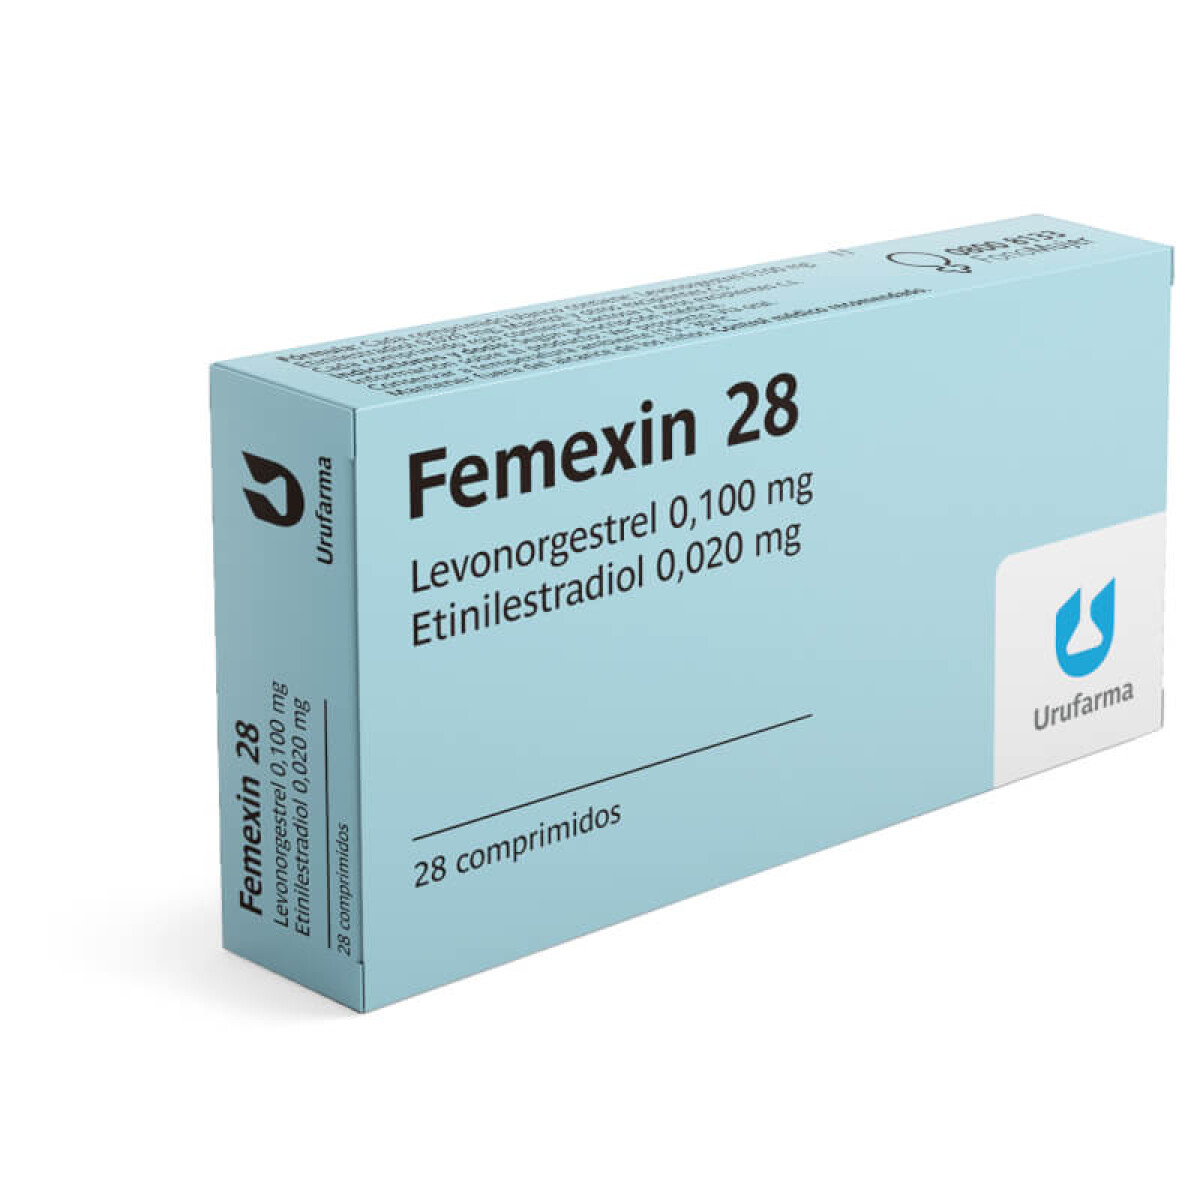 Anticonceptivas Femexin - 28 comprimidos 